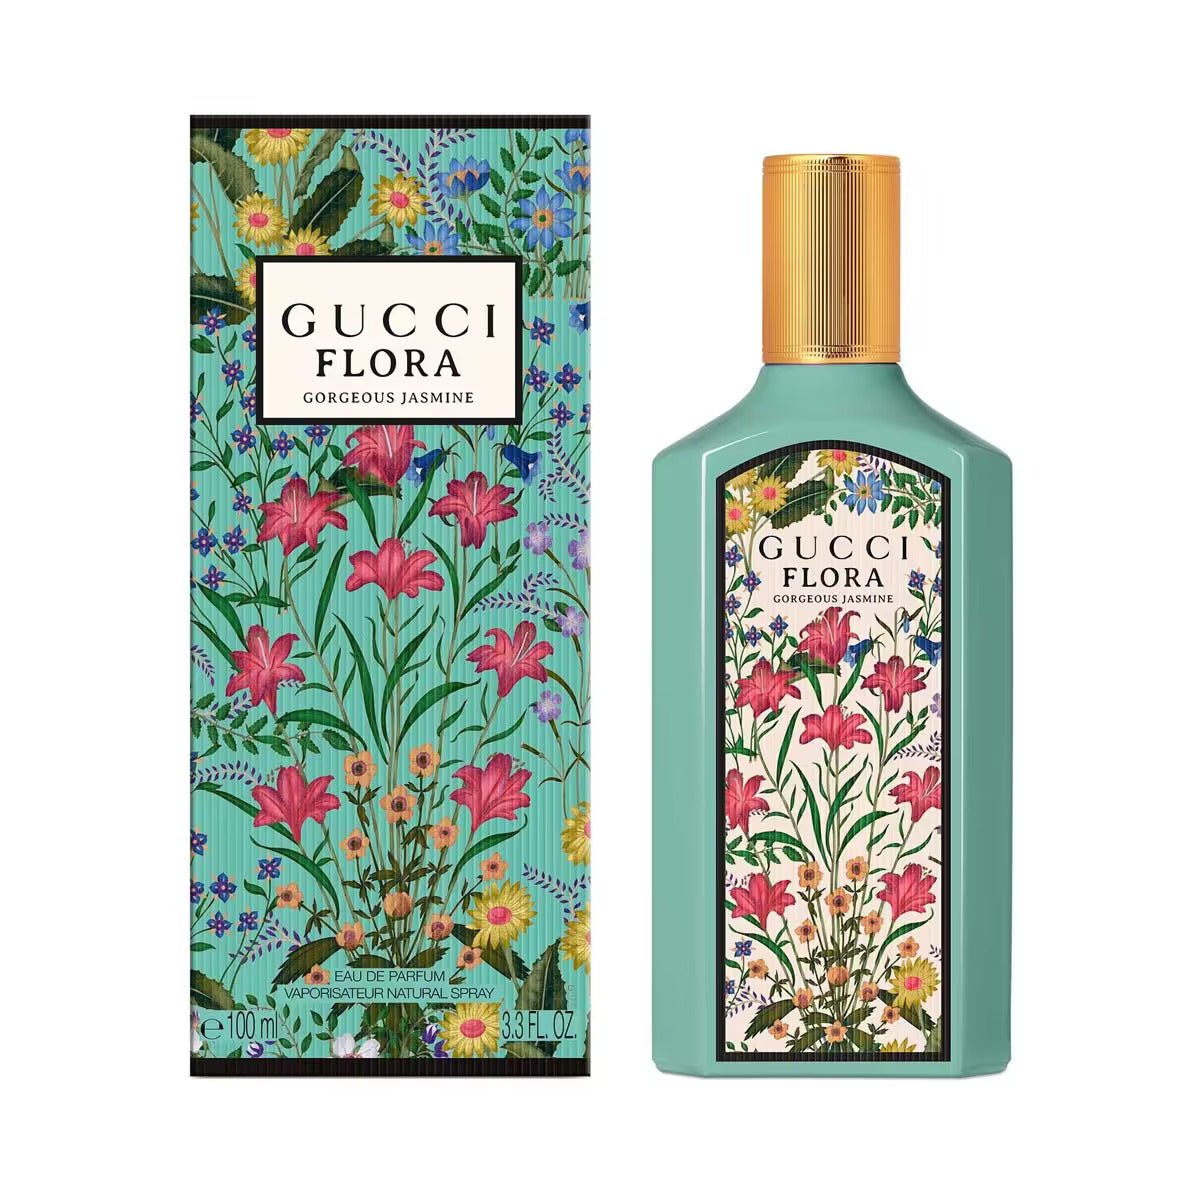 Gucci Flora Gorgeous Jasmine EDP Trio Set | My Perfume Shop Australia